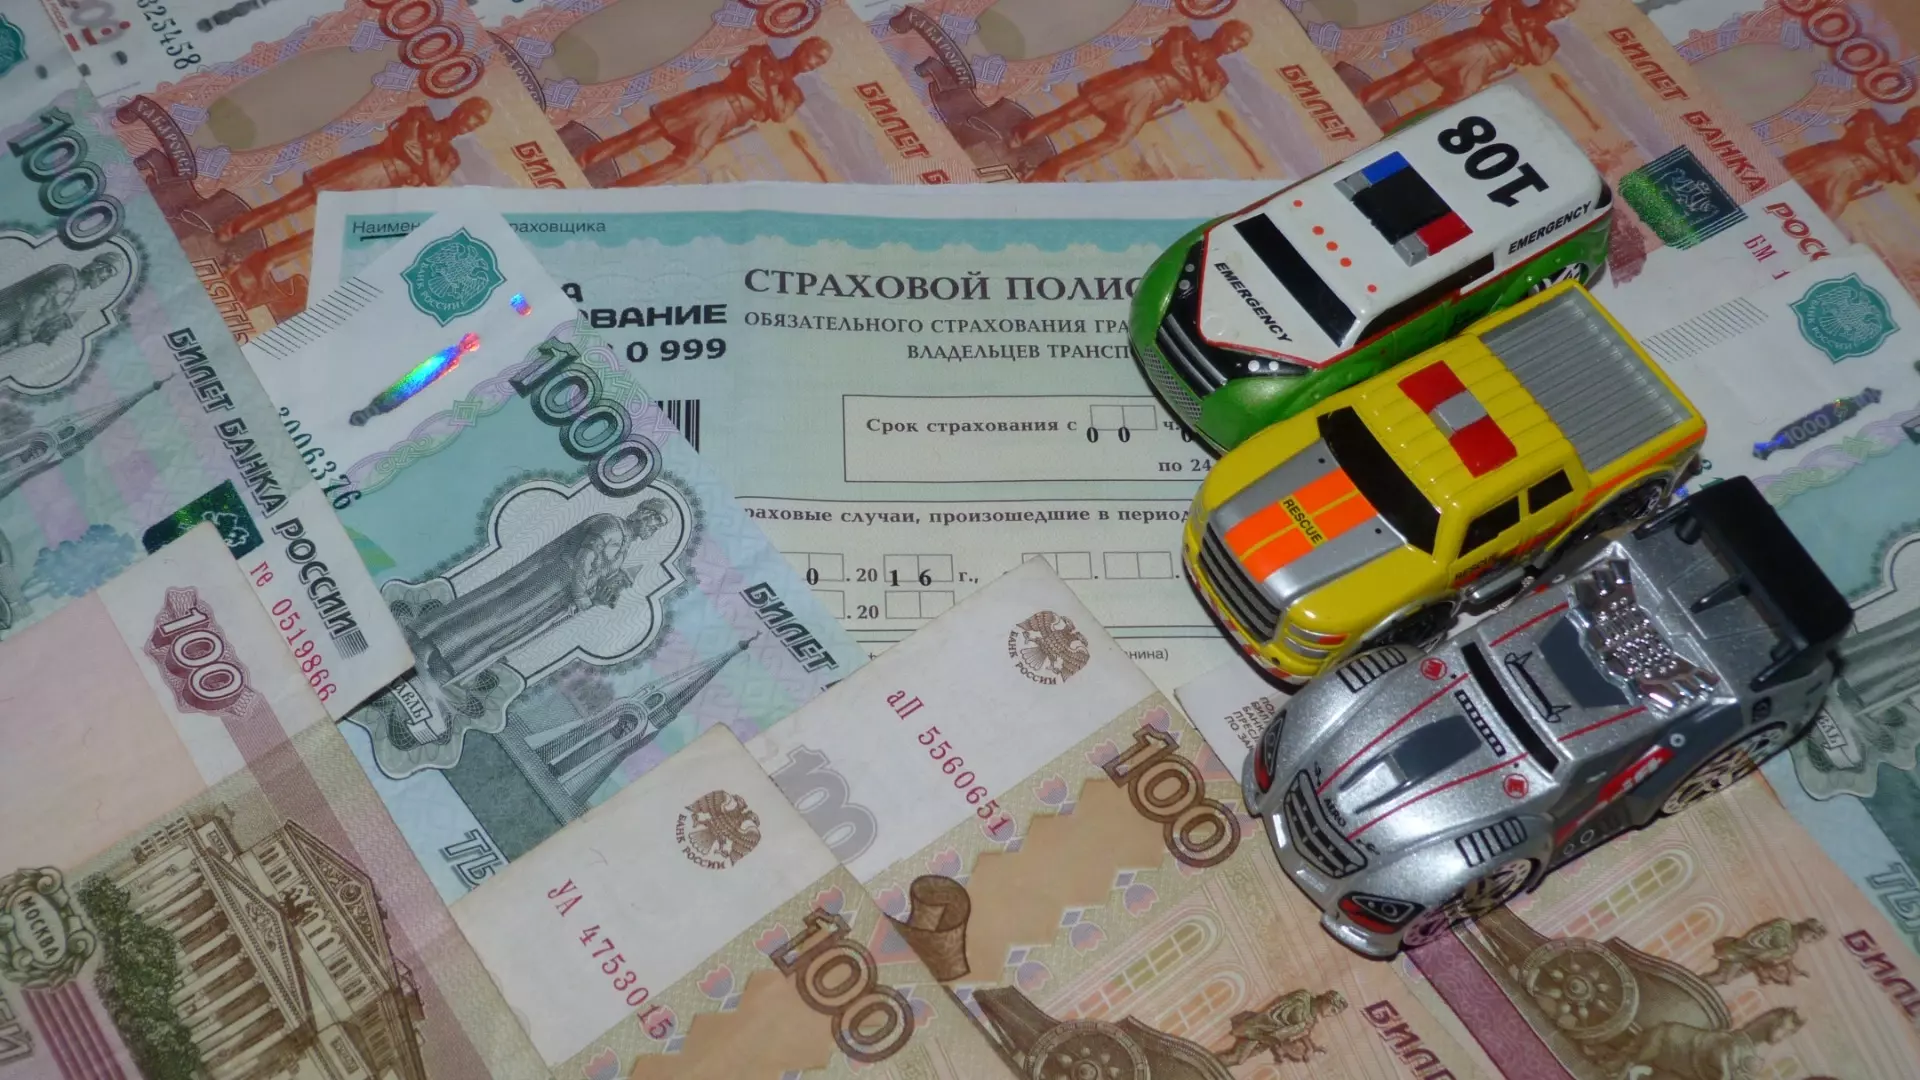 Агента страховой компании в Ижевске будут судить за присвоение денег клиентов